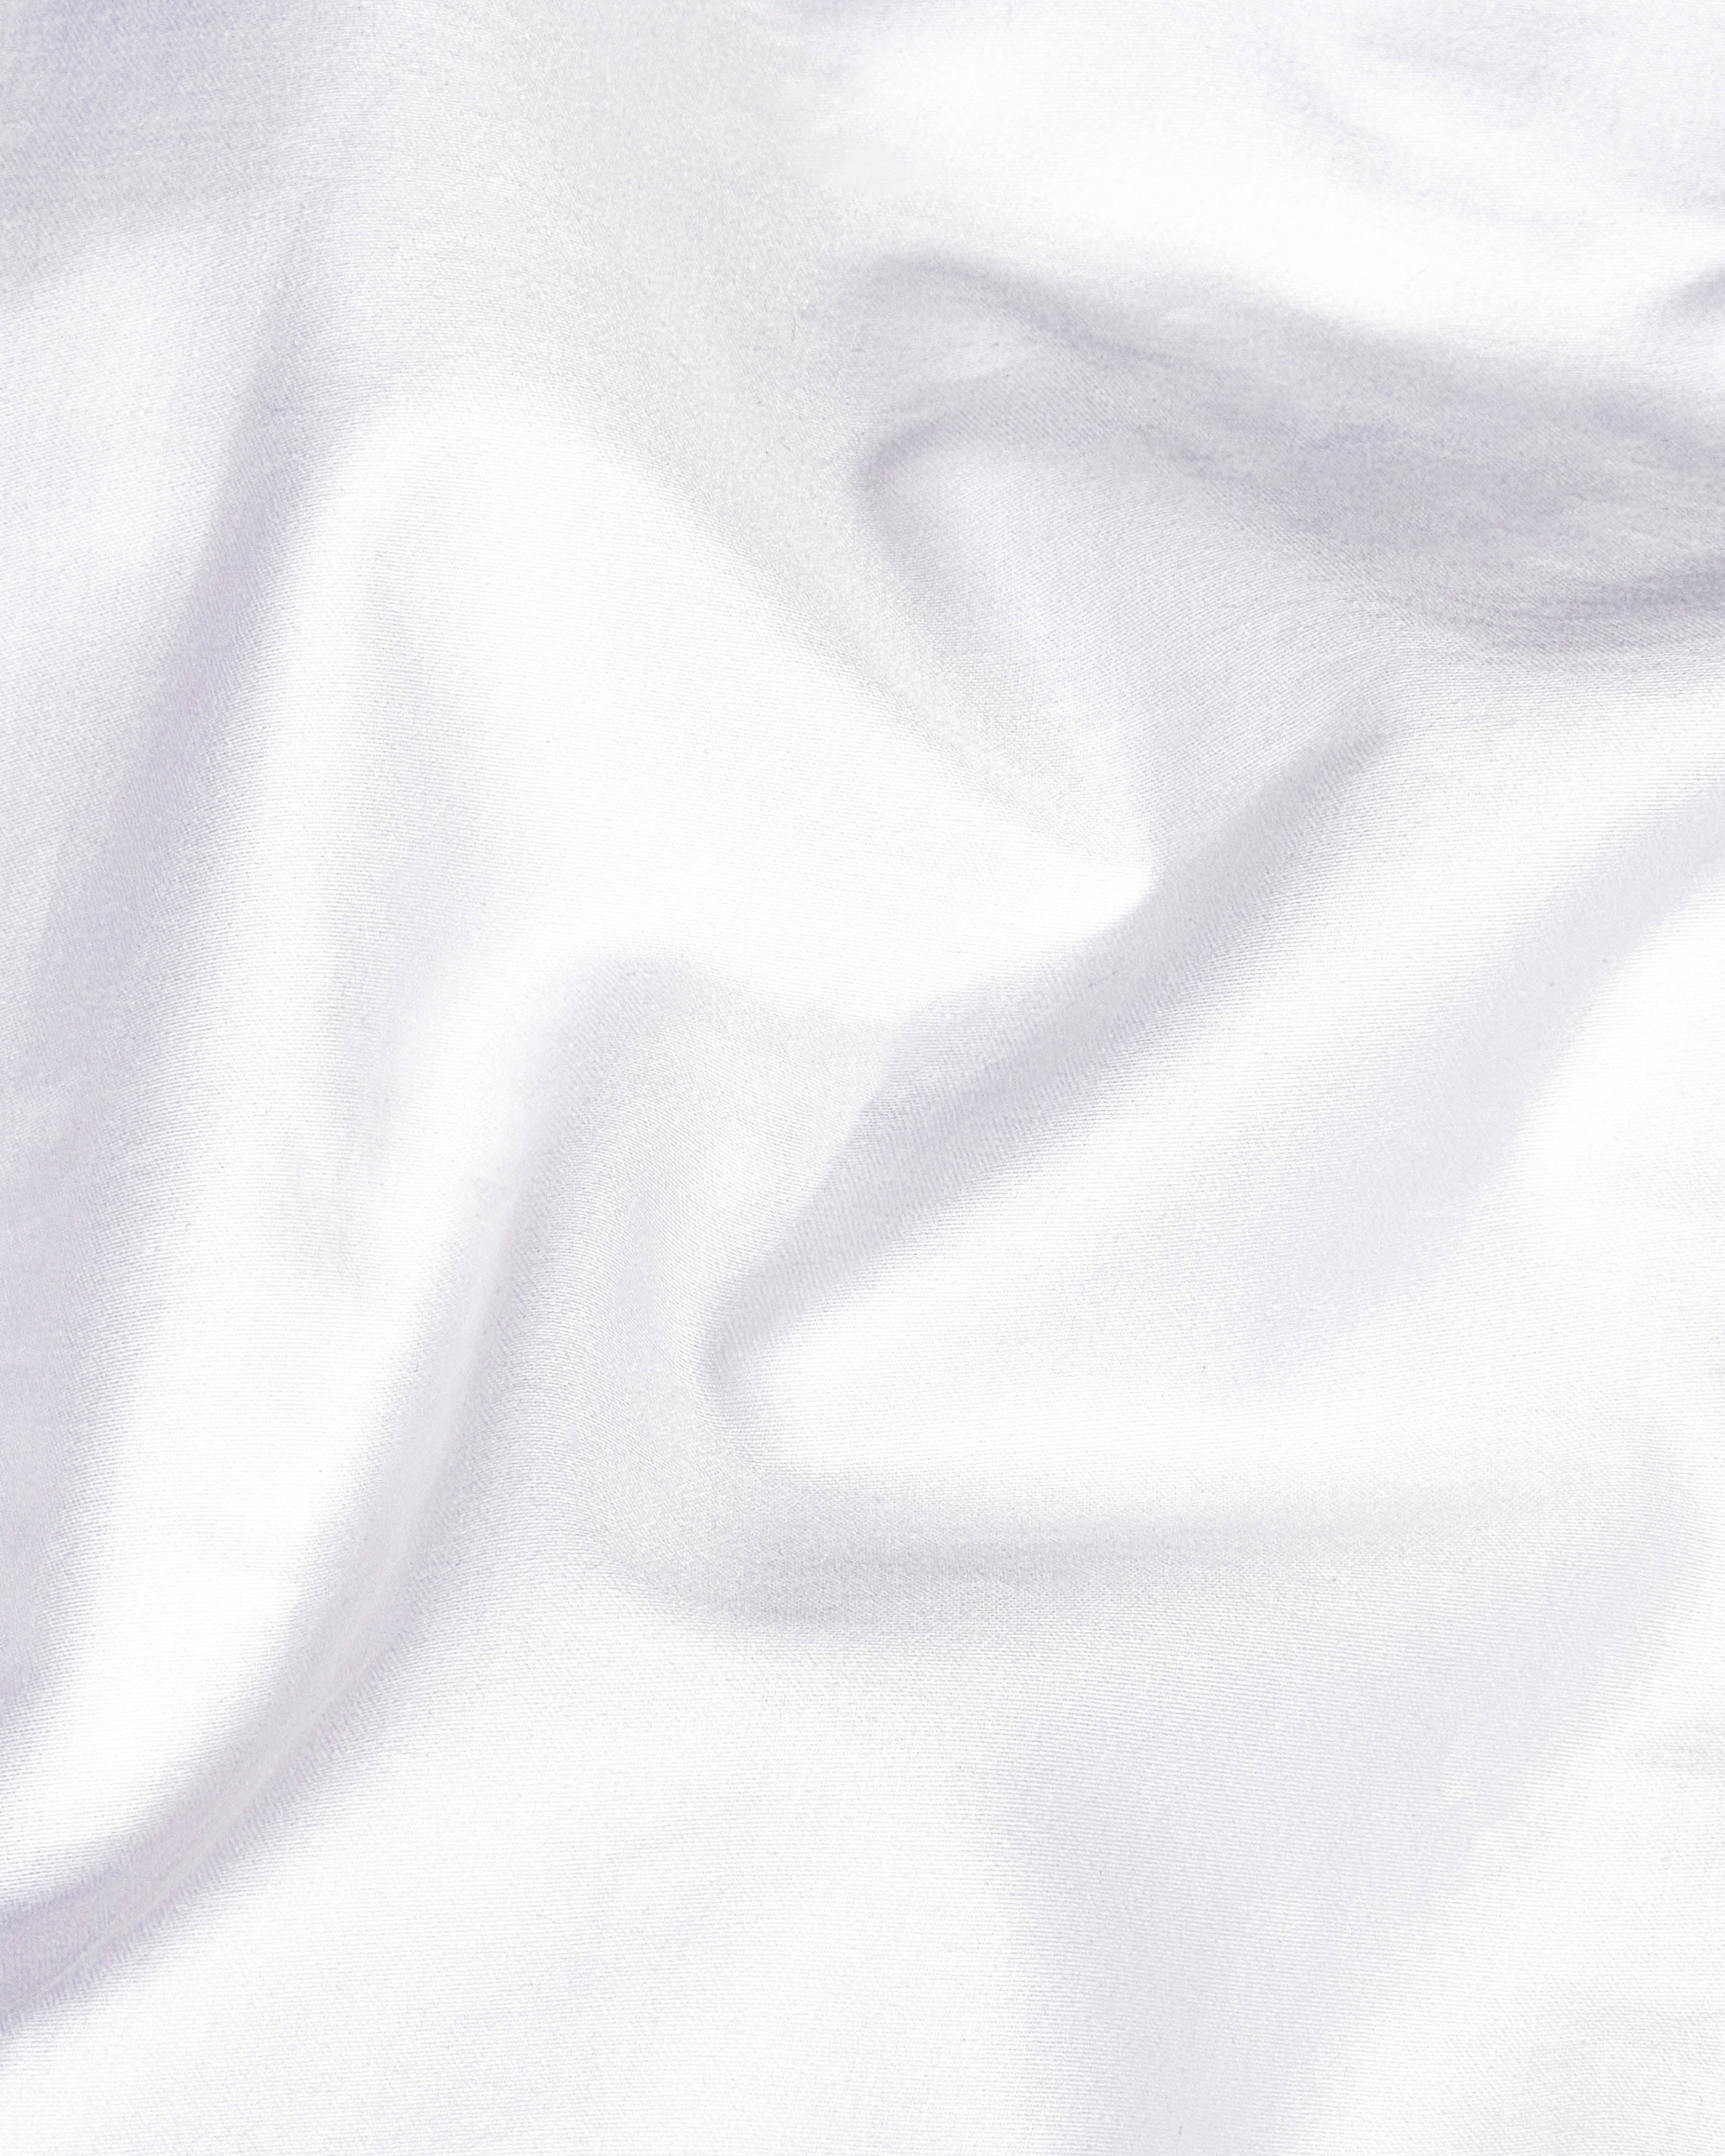 Bright White Subtle Sheen Embroidered Super Soft Premium Cotton Kurta Shirt 2670-KS-E022-38,2670-KS-E022-H-38,2670-KS-E022-39,2670-KS-E022-H-39,2670-KS-E022-40,2670-KS-E022-H-40,2670-KS-E022-42,2670-KS-E022-H-42,2670-KS-E022-44,2670-KS-E022-H-44,2670-KS-E022-46,2670-KS-E022-H-46,2670-KS-E022-48,2670-KS-E022-H-48,2670-KS-E022-50,2670-KS-E022-H-50,2670-KS-E022-52,2670-KS-E022-H-52